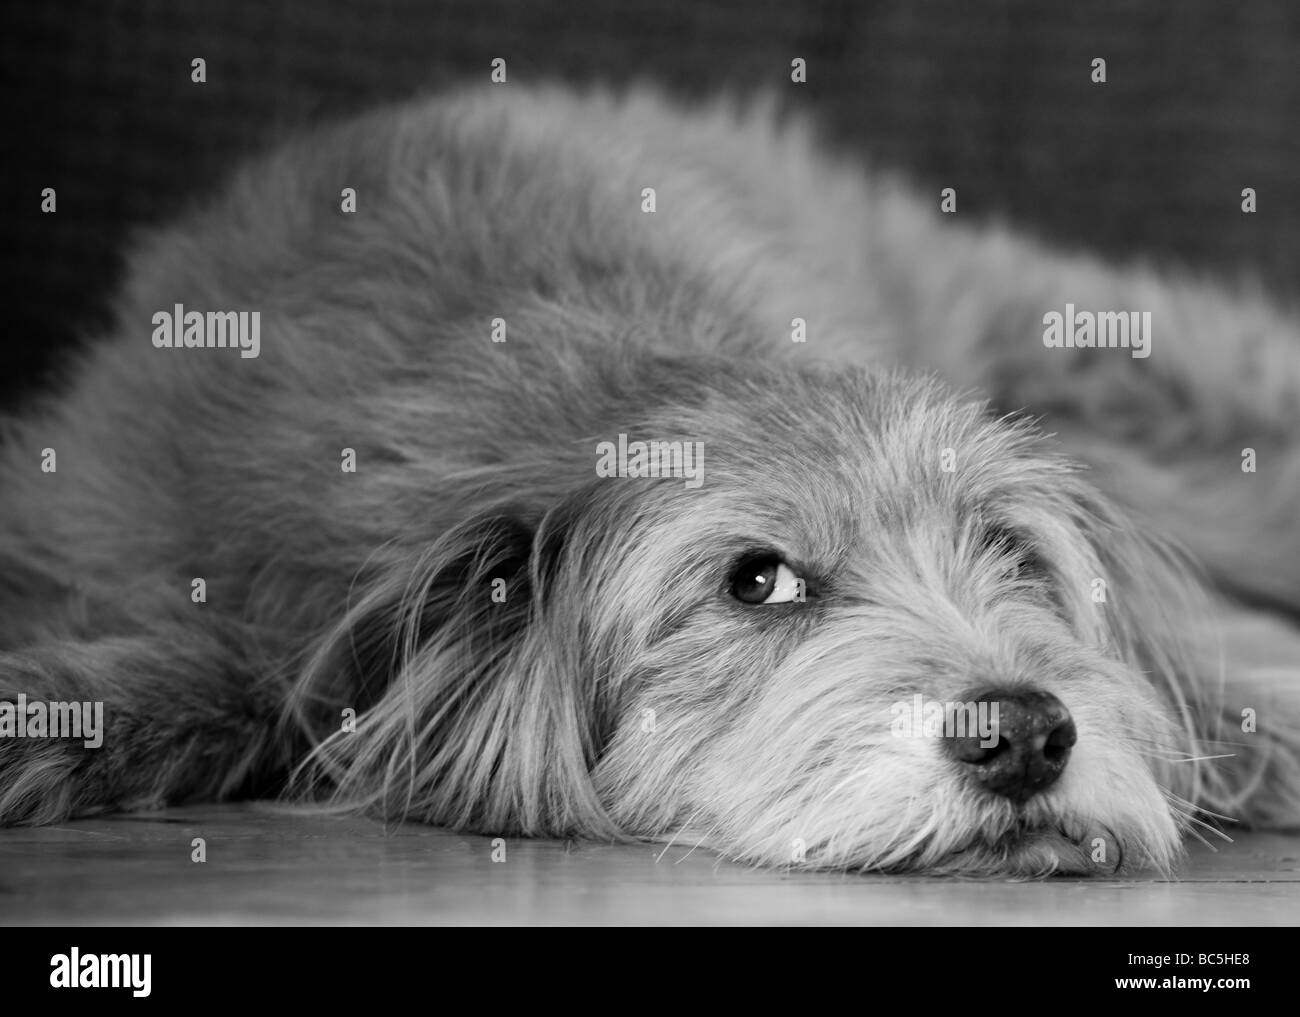 Hund lange ohren Schwarzweiß-Stockfotos und -bilder - Seite 2 - Alamy